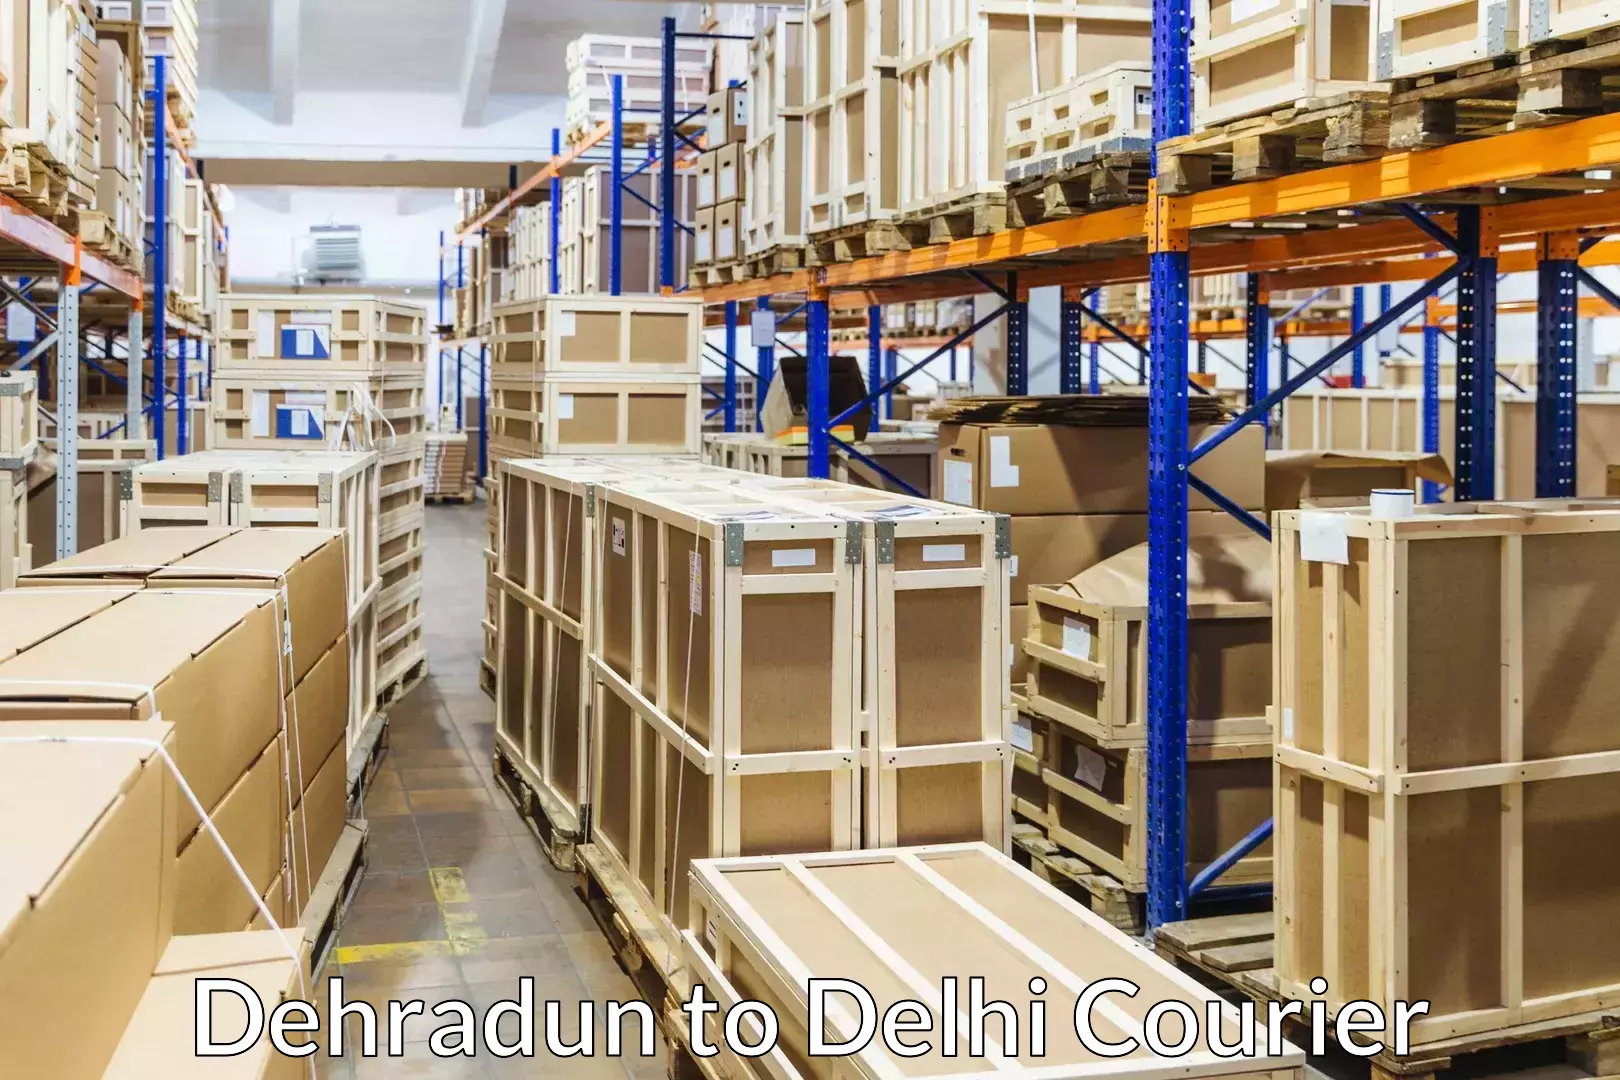 Home relocation experts Dehradun to Delhi